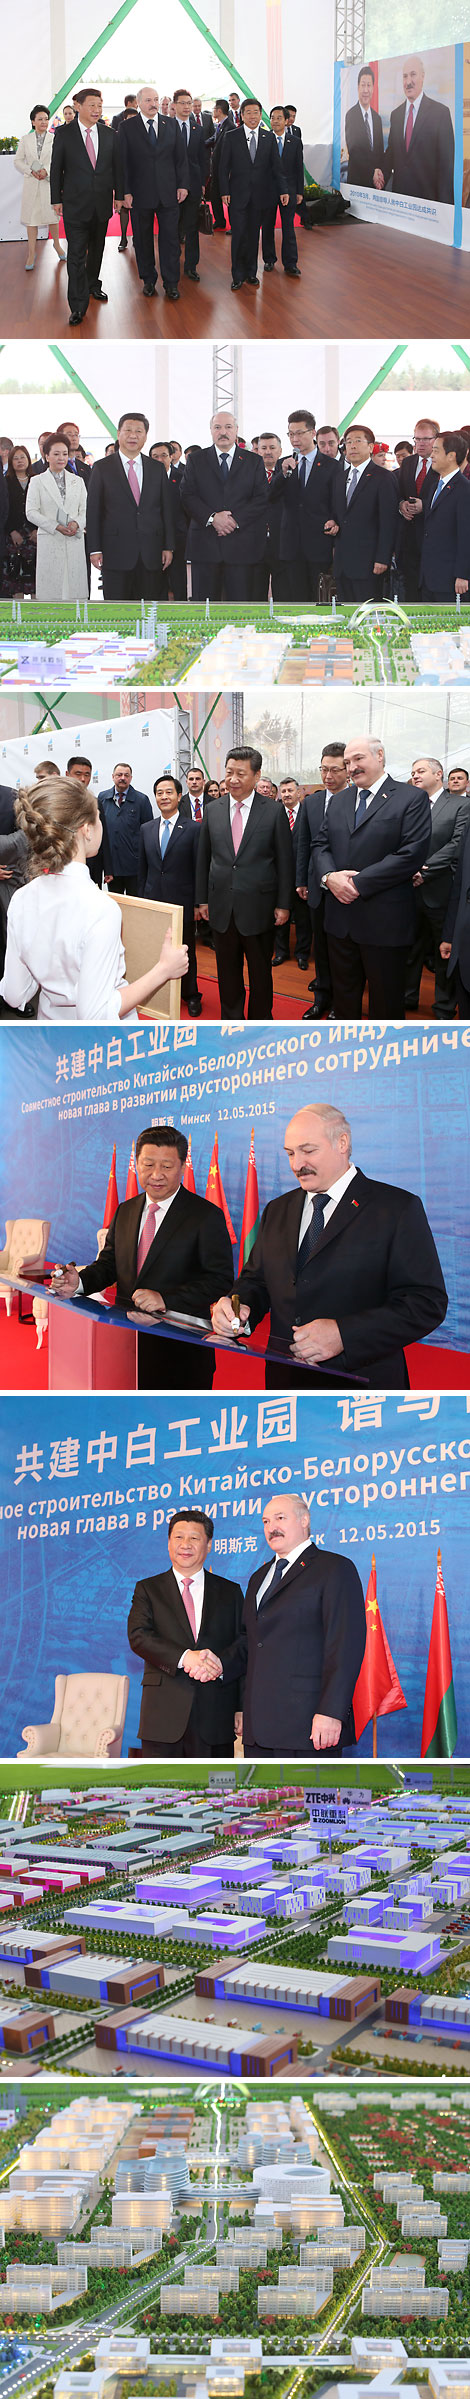 Президент Беларуси и Председатель КНР посетили Китайско-белорусский индустриальный парк